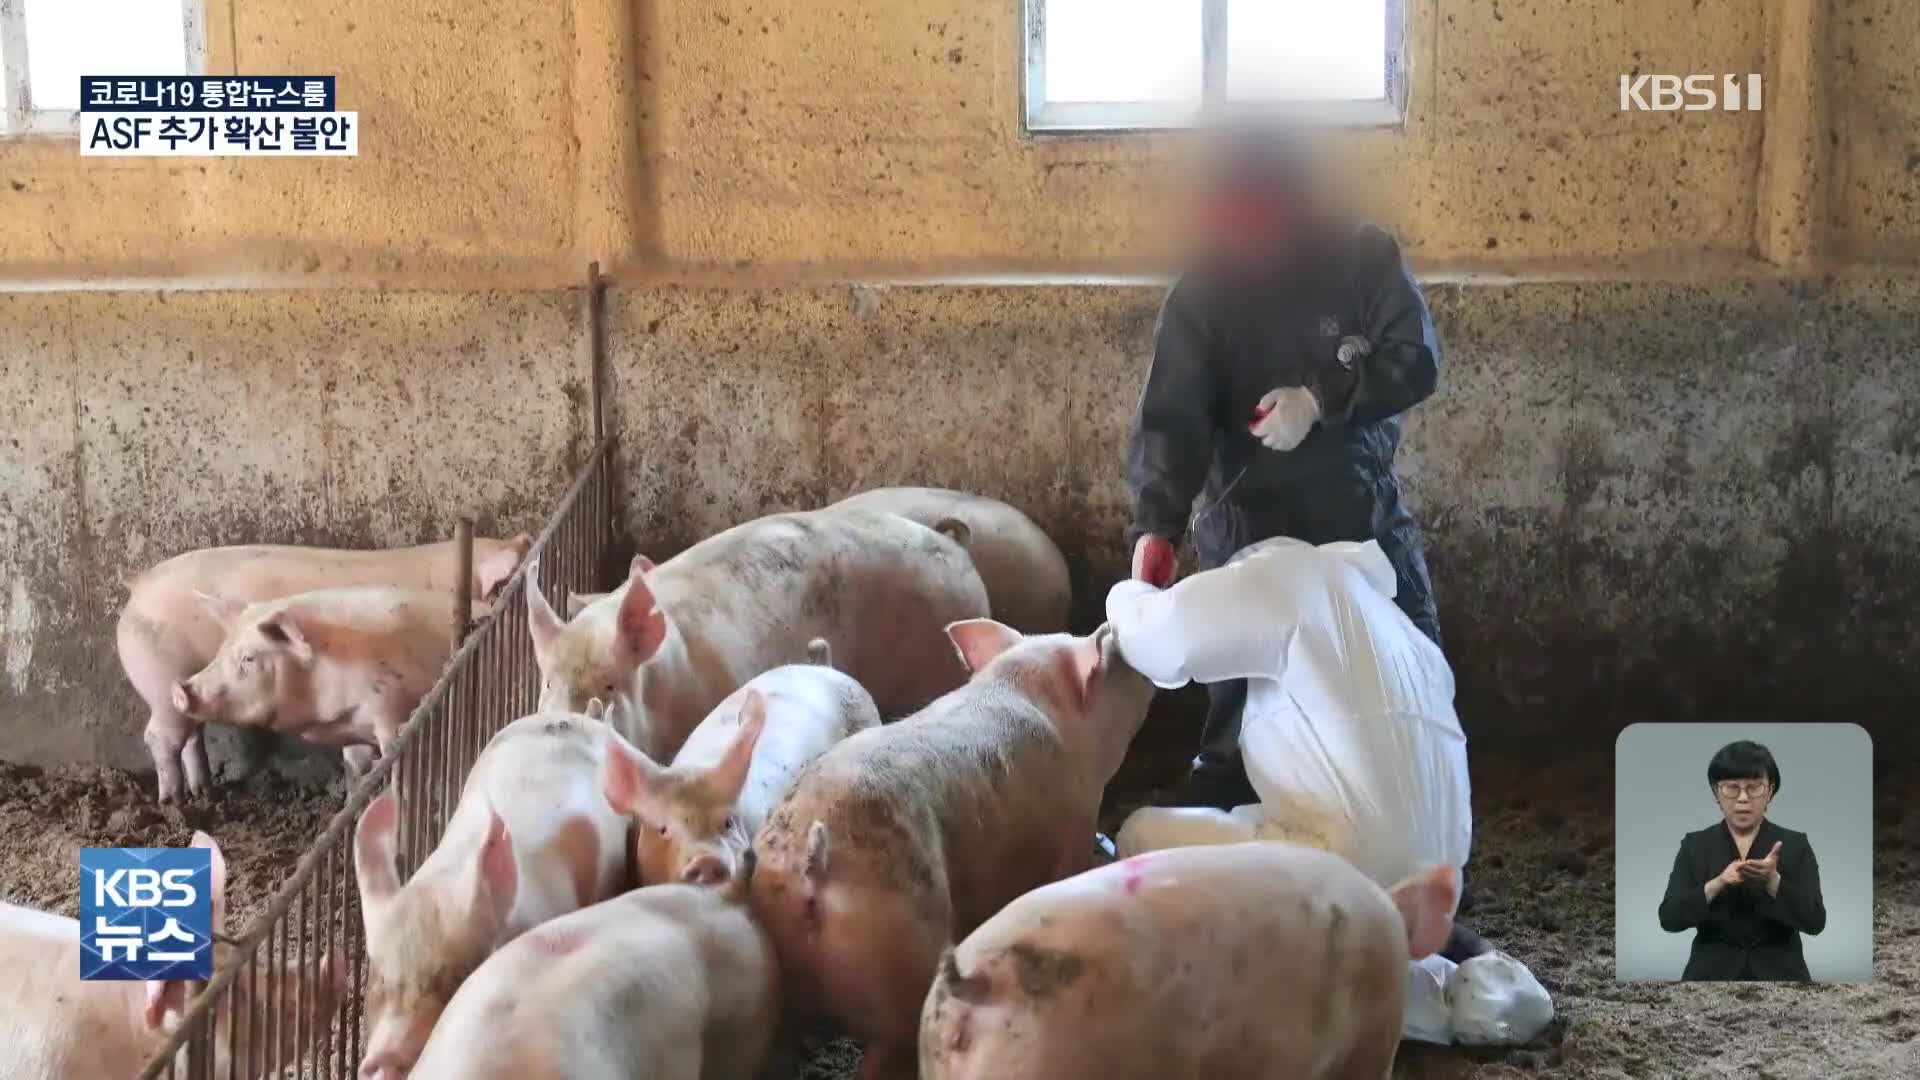 영월 돼지농장서 올해 첫 ‘ASF’…48시간 이동중지명령